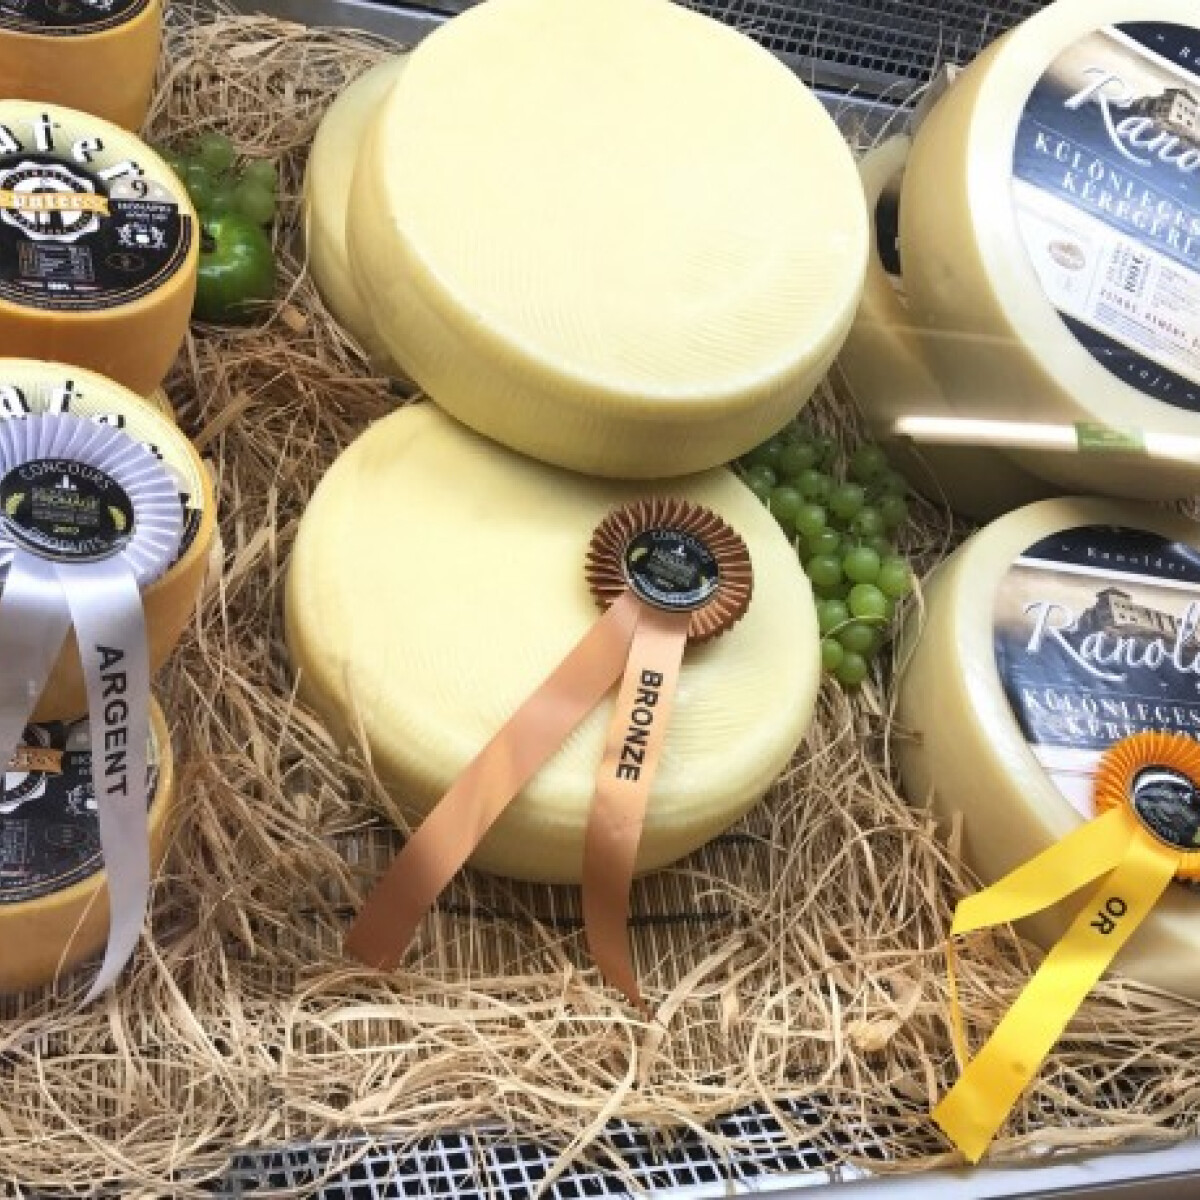 Három magyar sajt is dobogós lett világ legrangosabb sajtversenyén